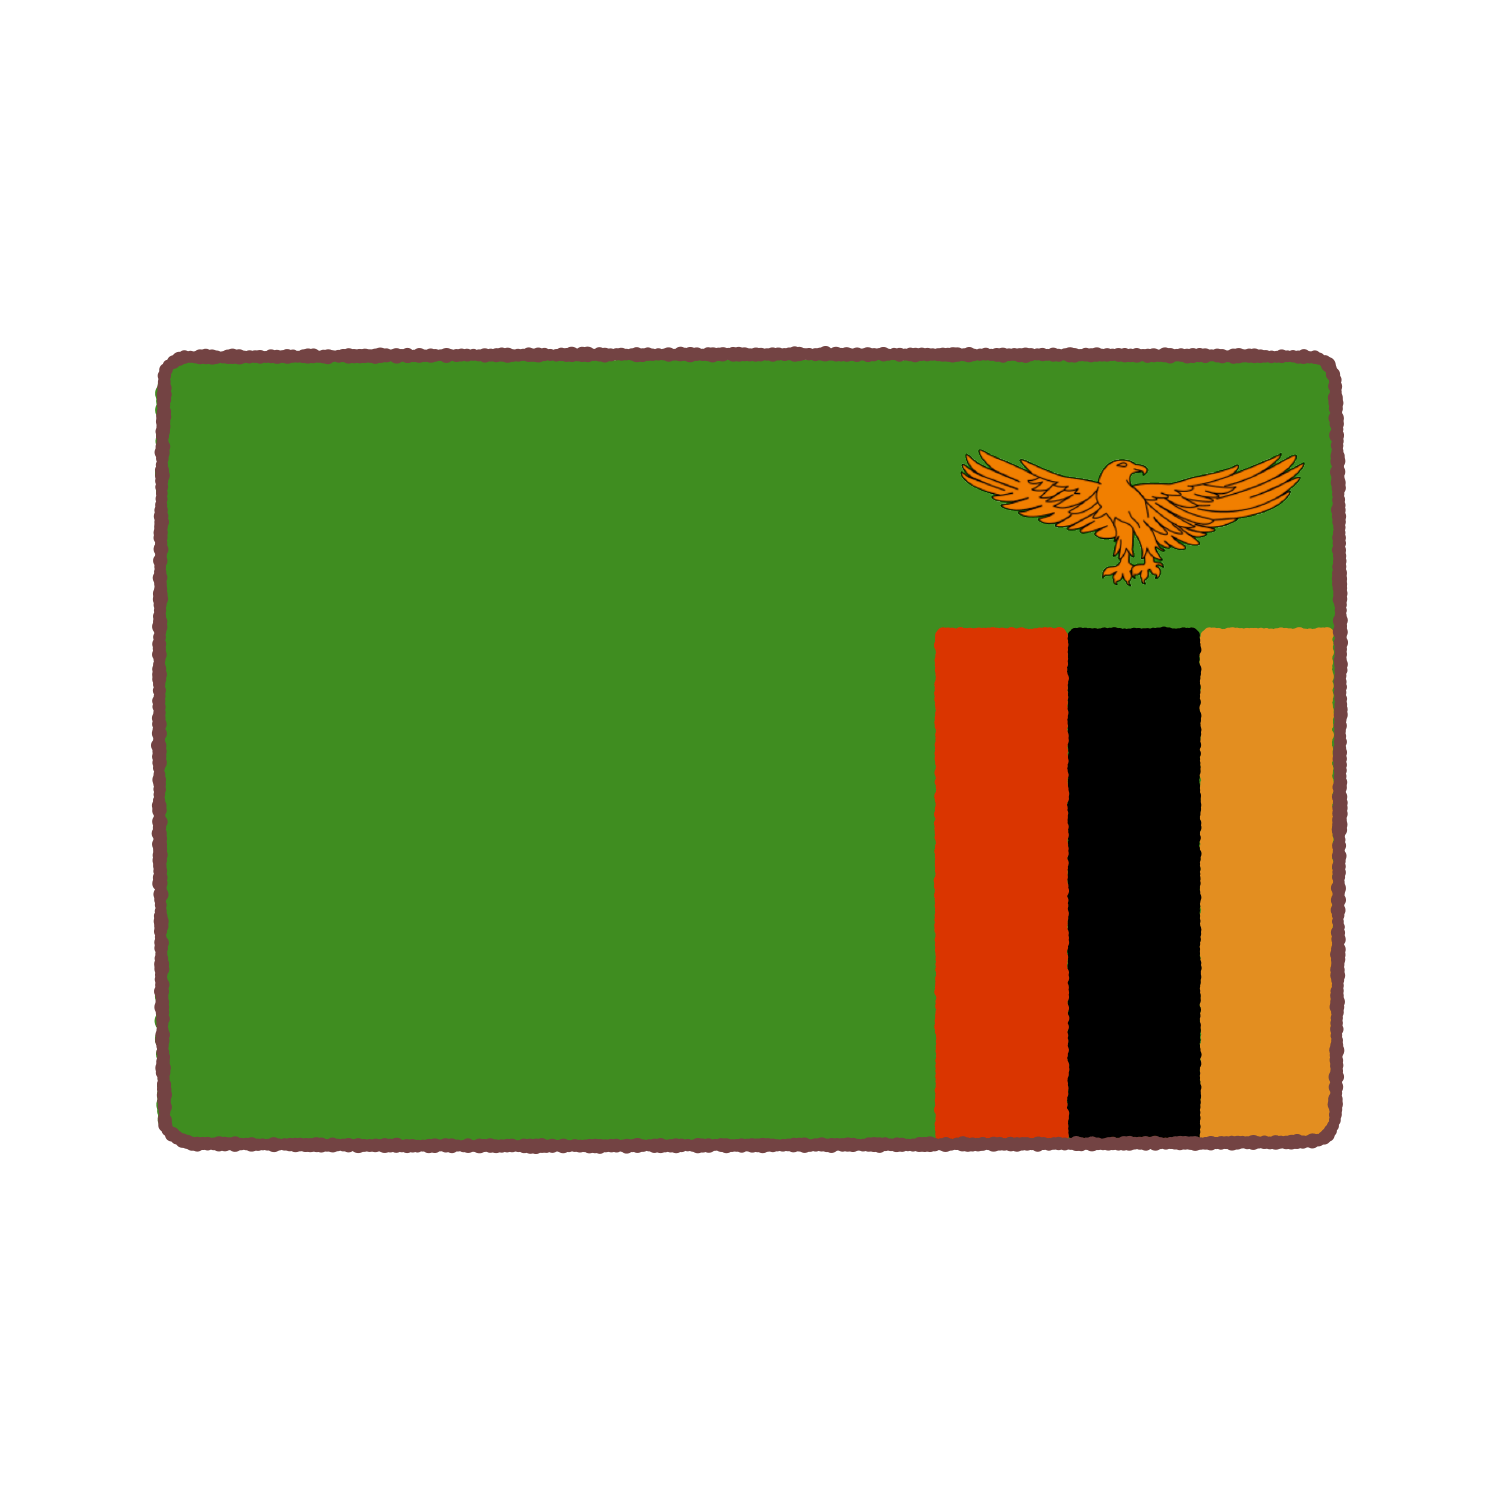 ザンビア国旗のイラスト